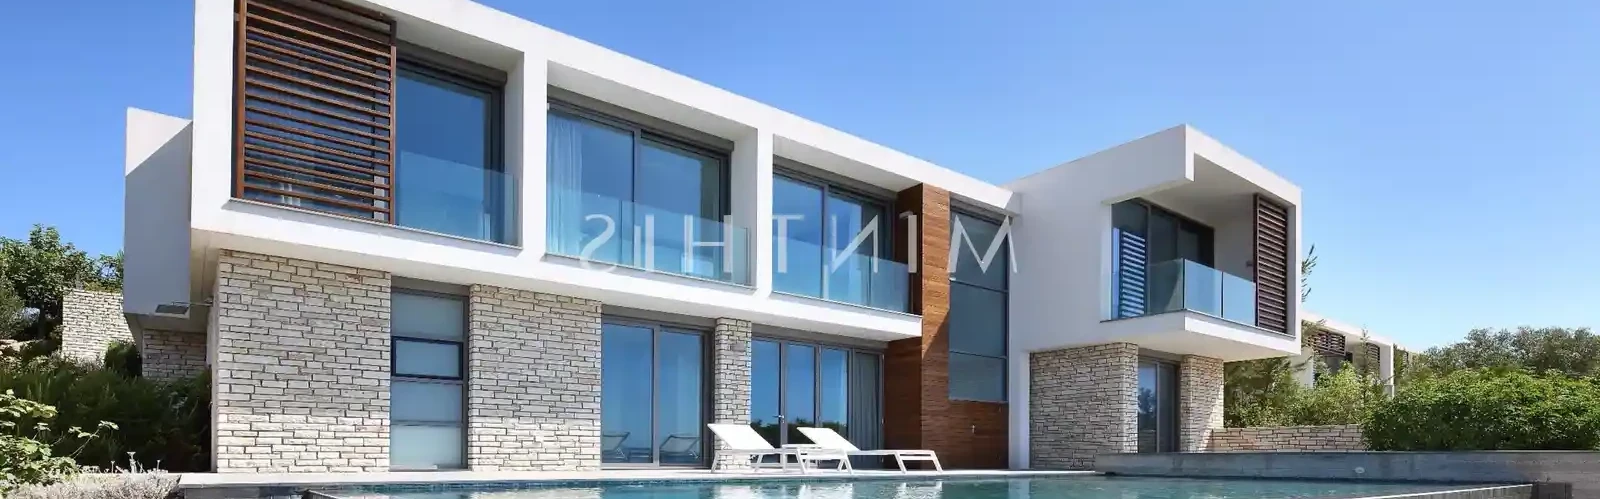 3-bedroom villa to rent €6.500, image 1